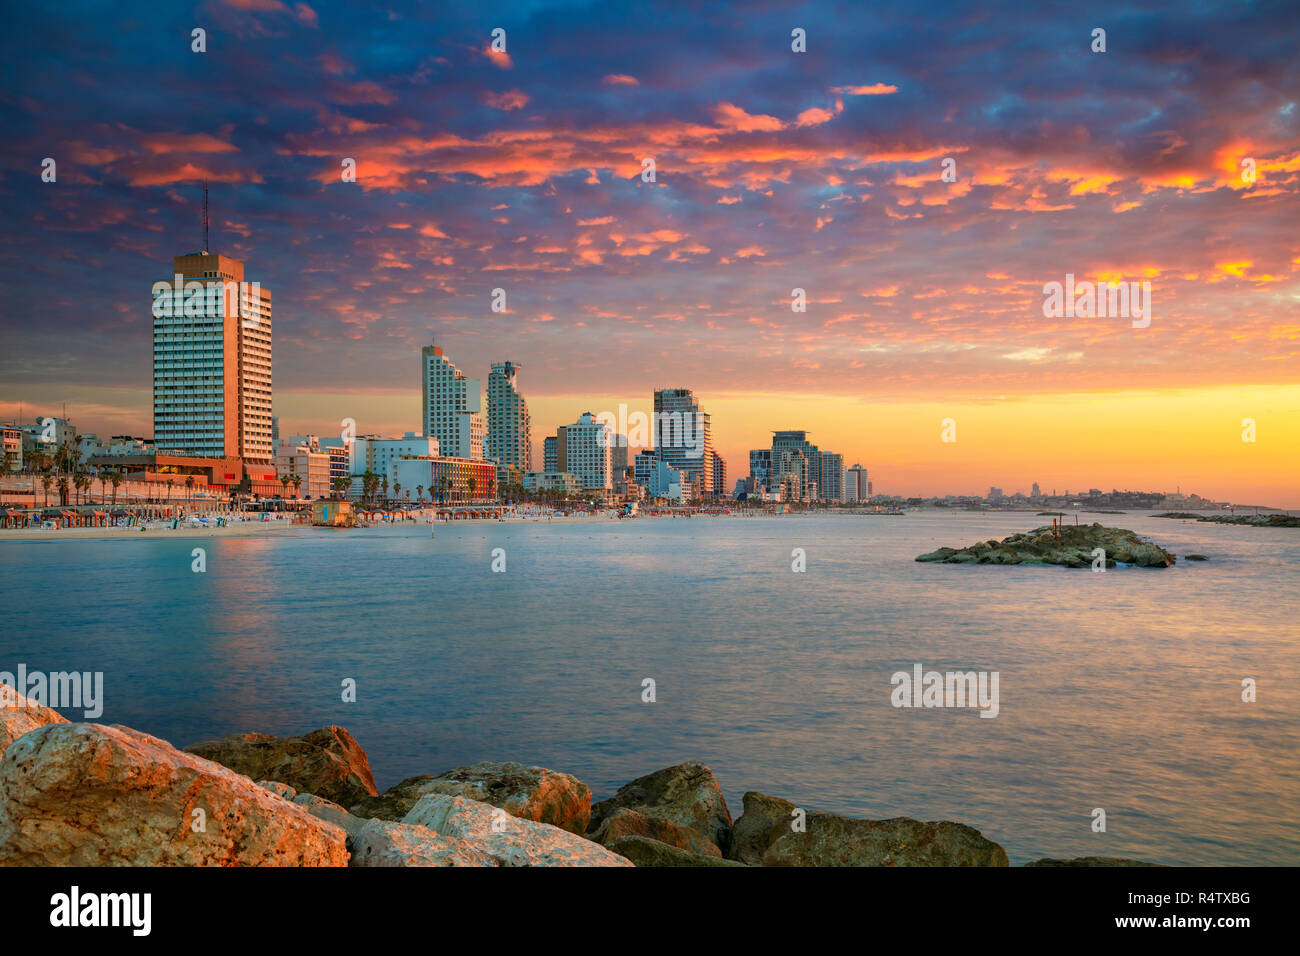 Skyline von Tel Aviv. Stadtbild Bild von Tel Aviv, Israel während des Sonnenuntergangs. Stockfoto